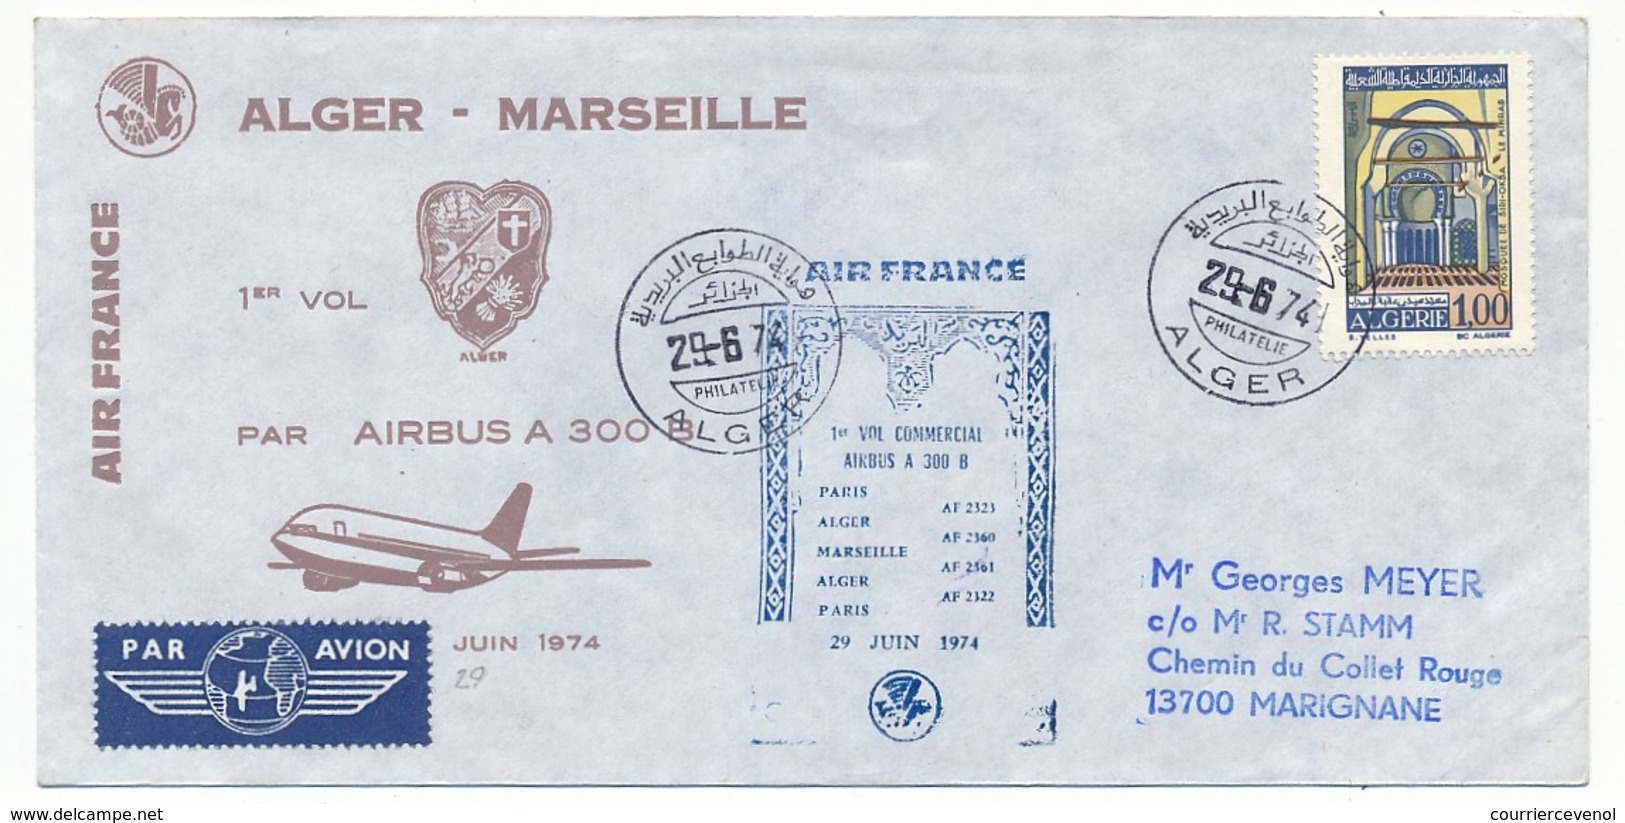 FRANCE - 2 Enveloppes - Marseille Alger (et Retour) Airbus 300B - 1974 - Premiers Vols